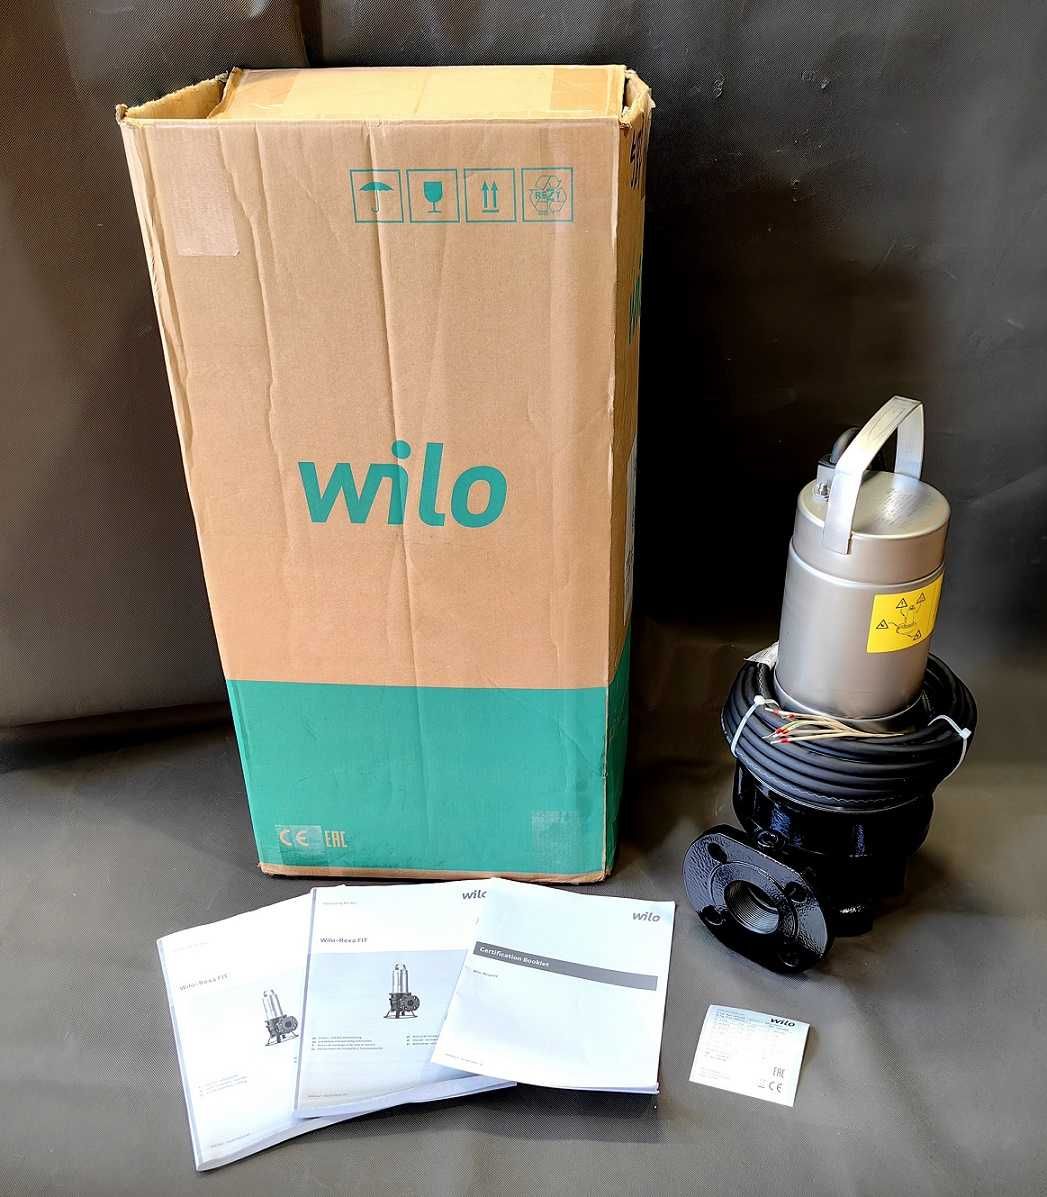 Pompa do ścieków Wilo-Rexa FIT V05DA-126 NOWA Karton Instrukcje